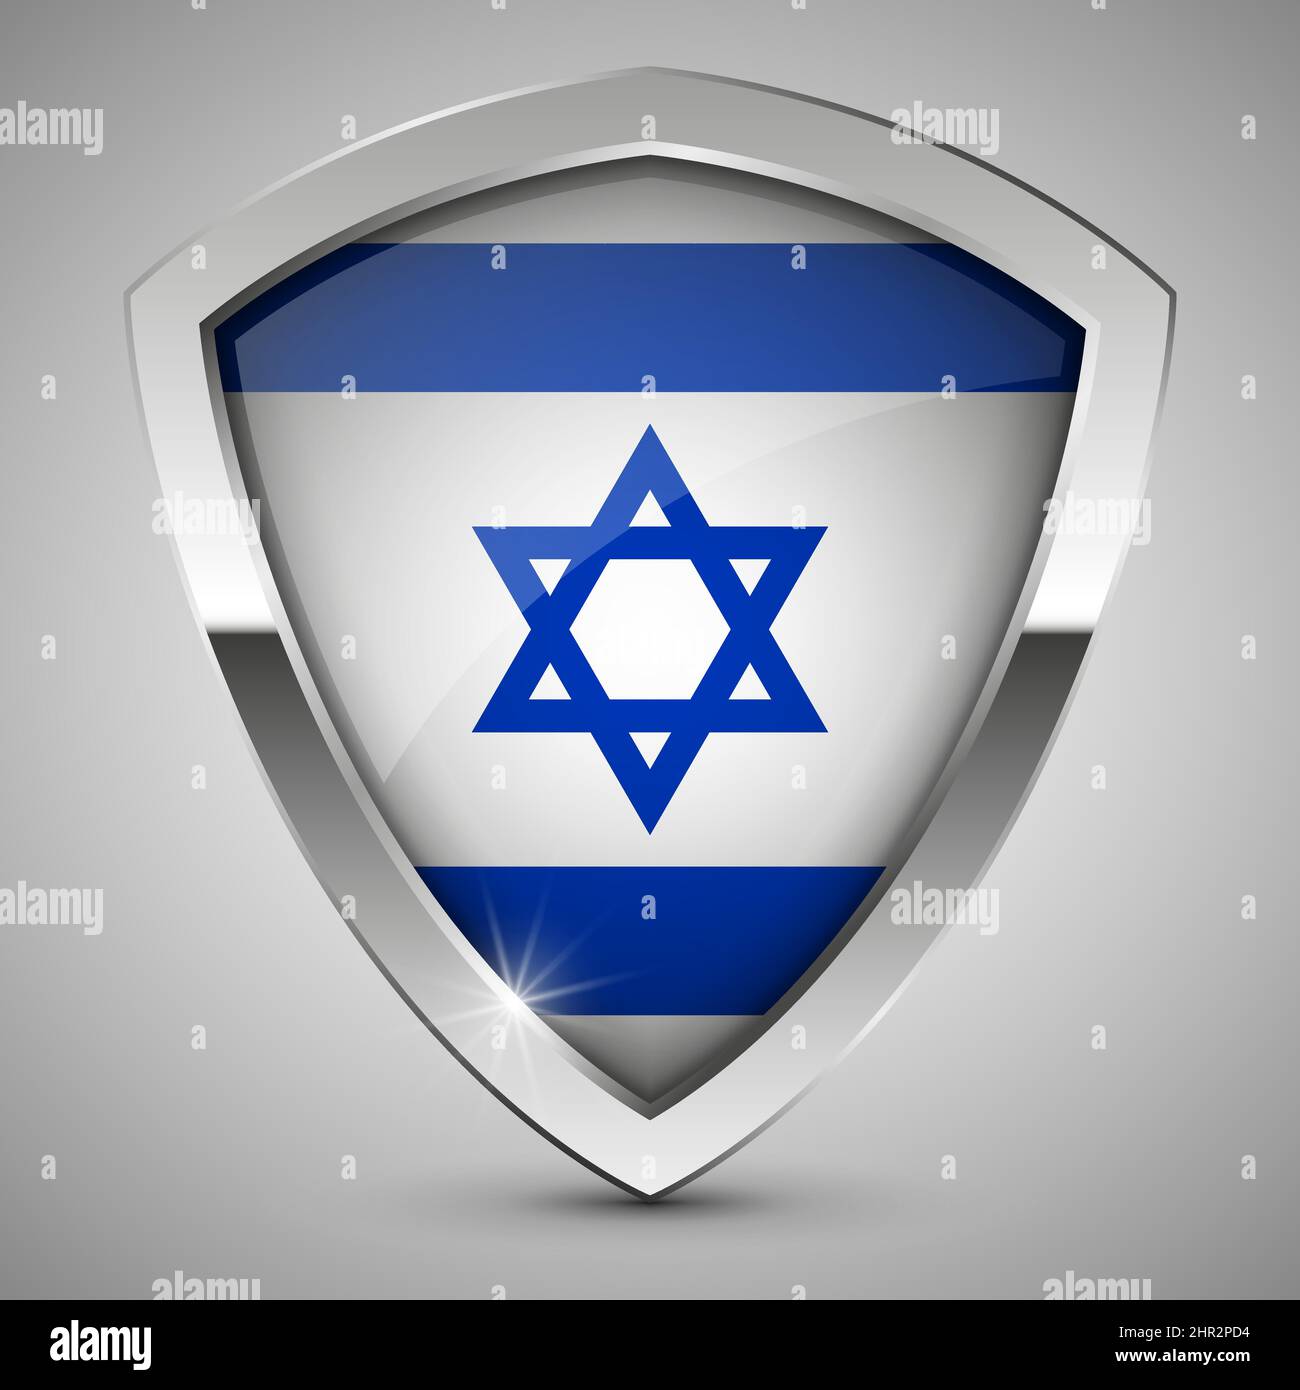 EPS10 Vektor Patriotisches Schild mit der Flagge Israels. Ein Element der Wirkung für die Verwendung, die Sie daraus machen möchten. Stock Vektor